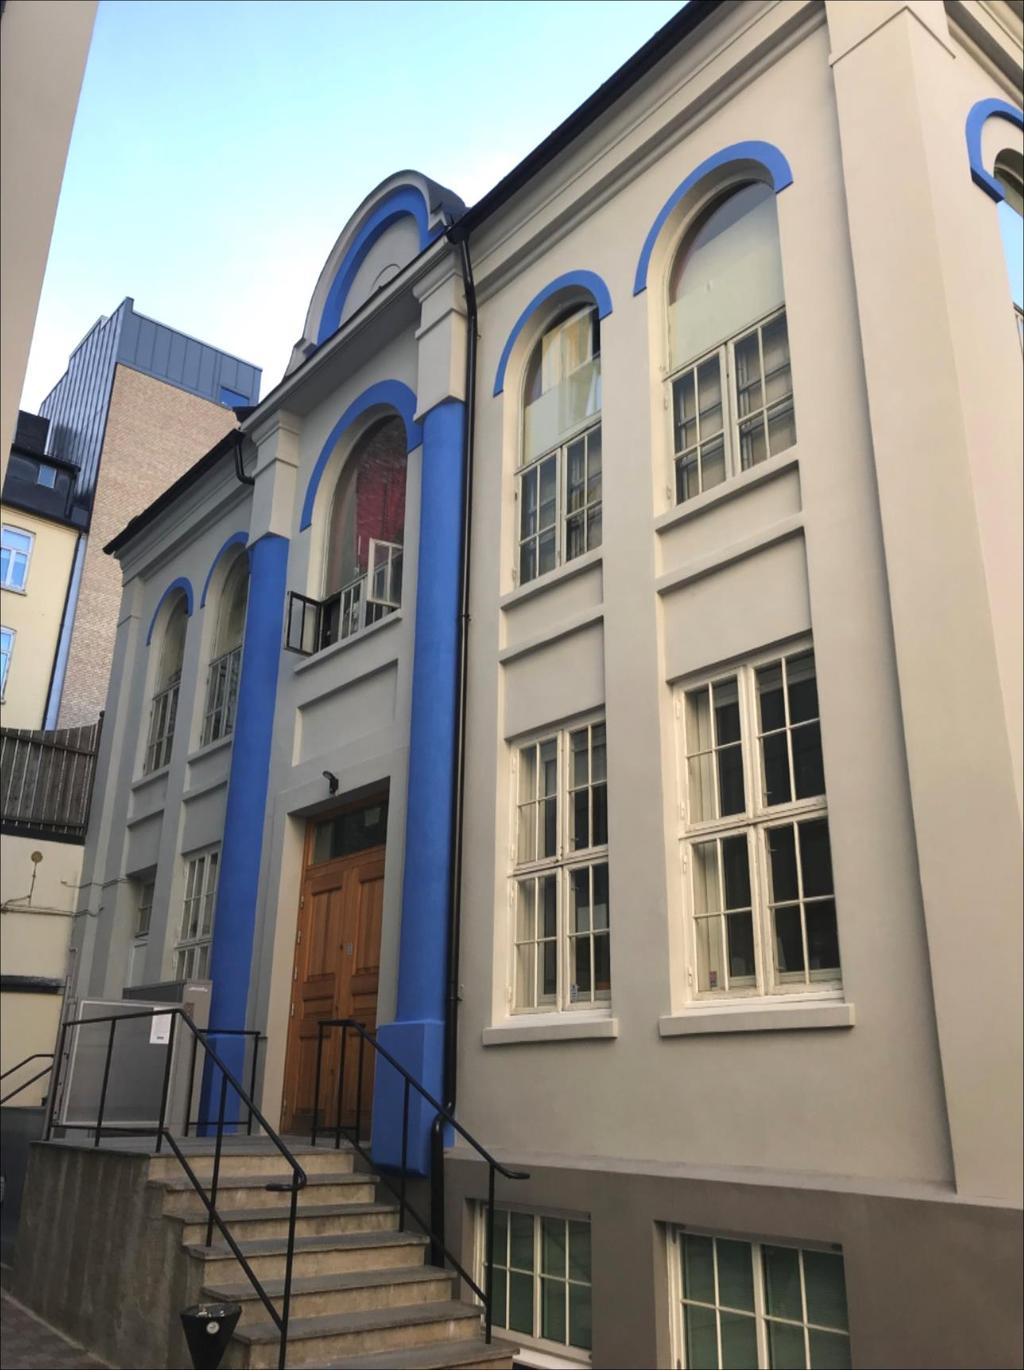 Den gamle synagogen i Calmeyersgate Tilskudd 489 000